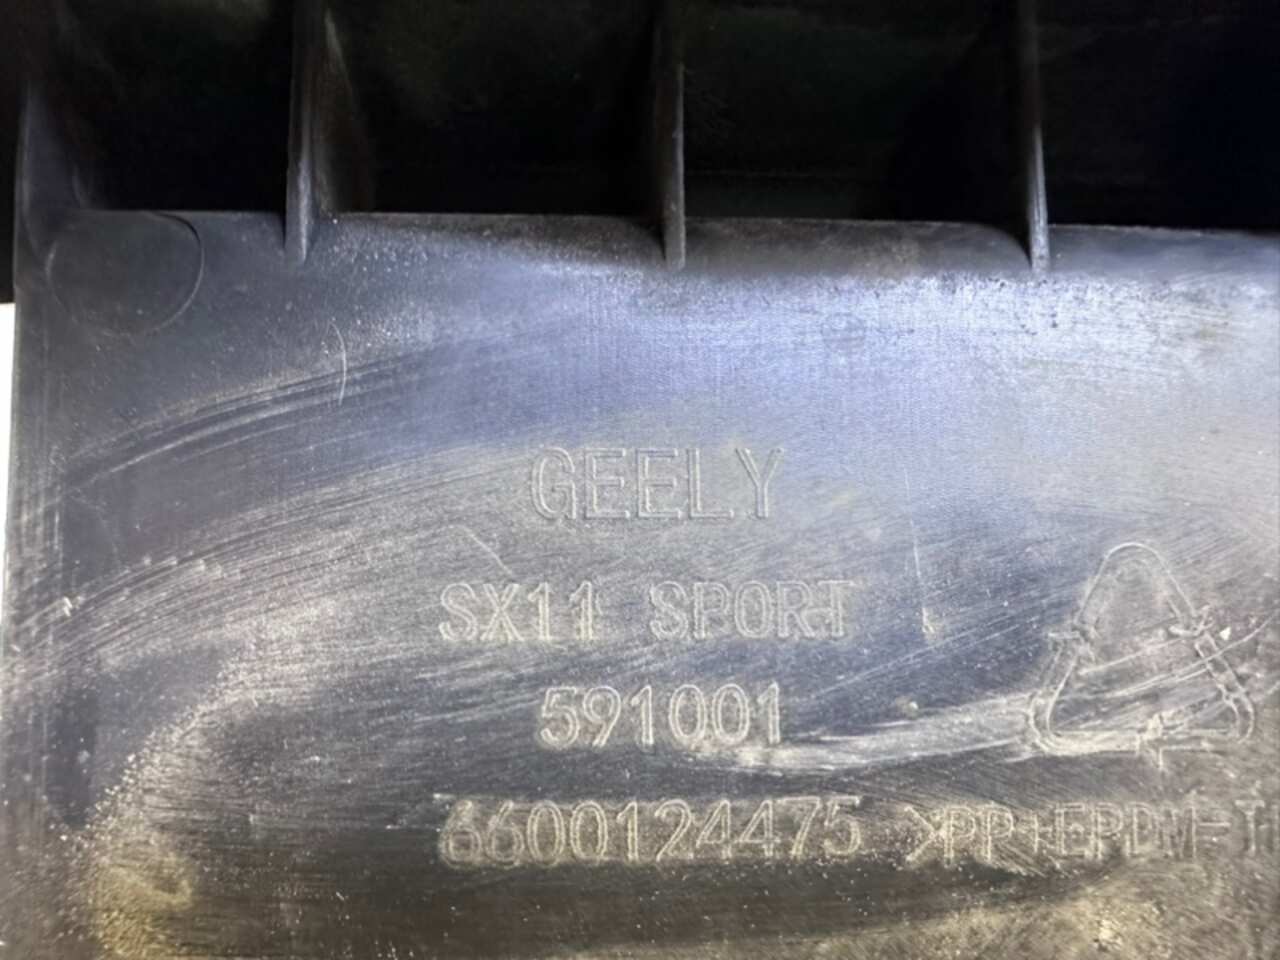 Пыльник бампера GEELY COOLRAY SX11 2020- БУ 6600124475 213187